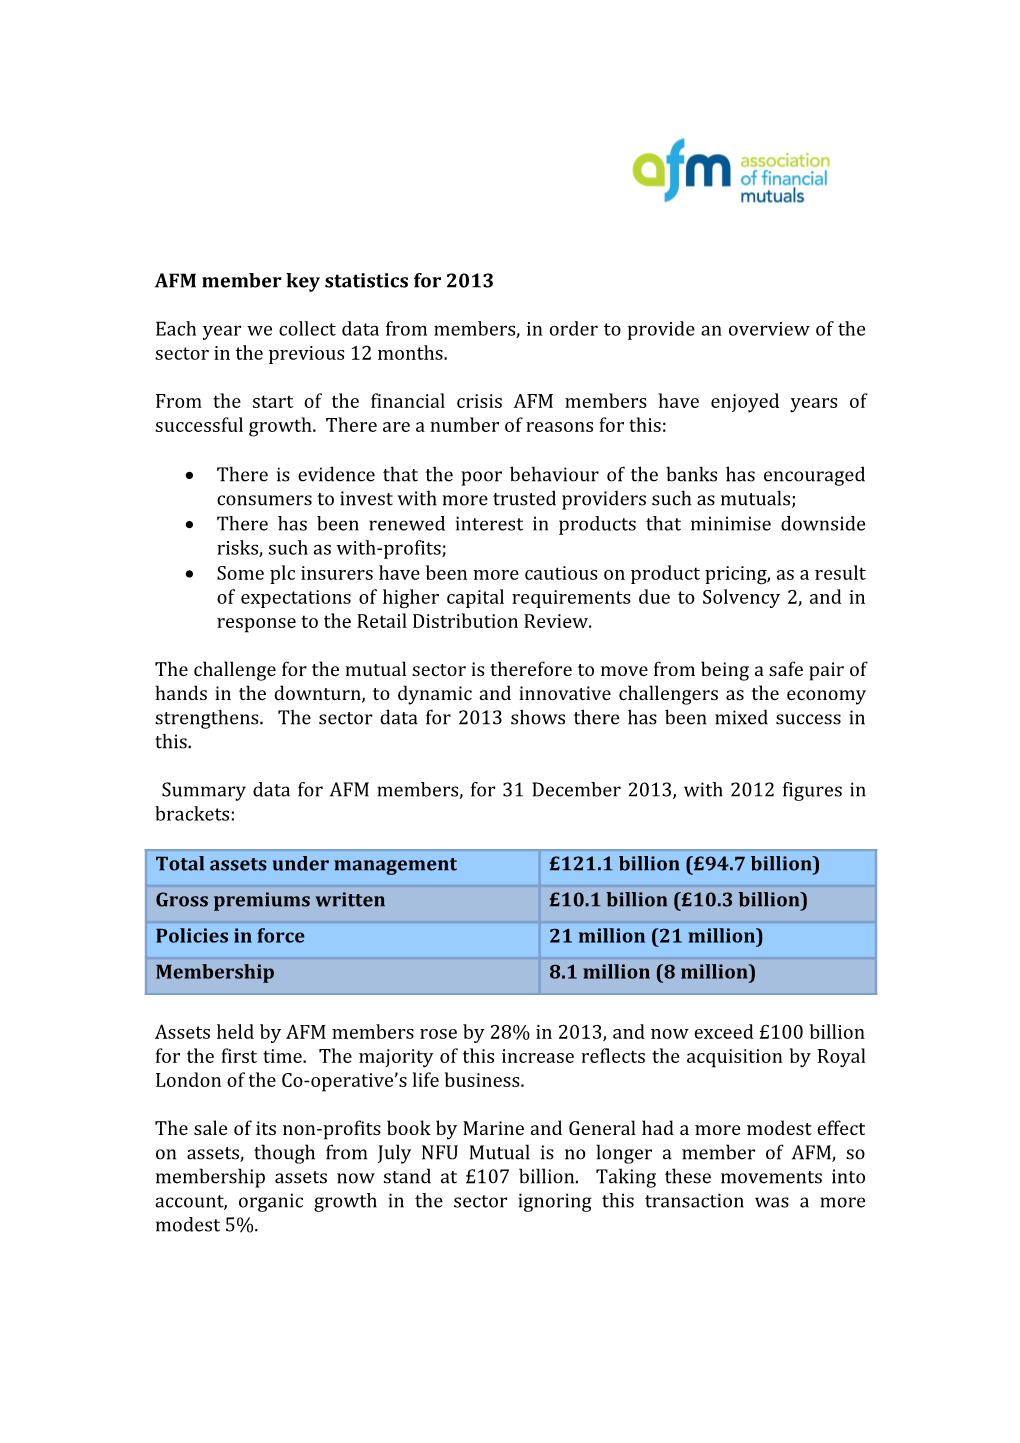 AFM Member Key Statistics for 2013